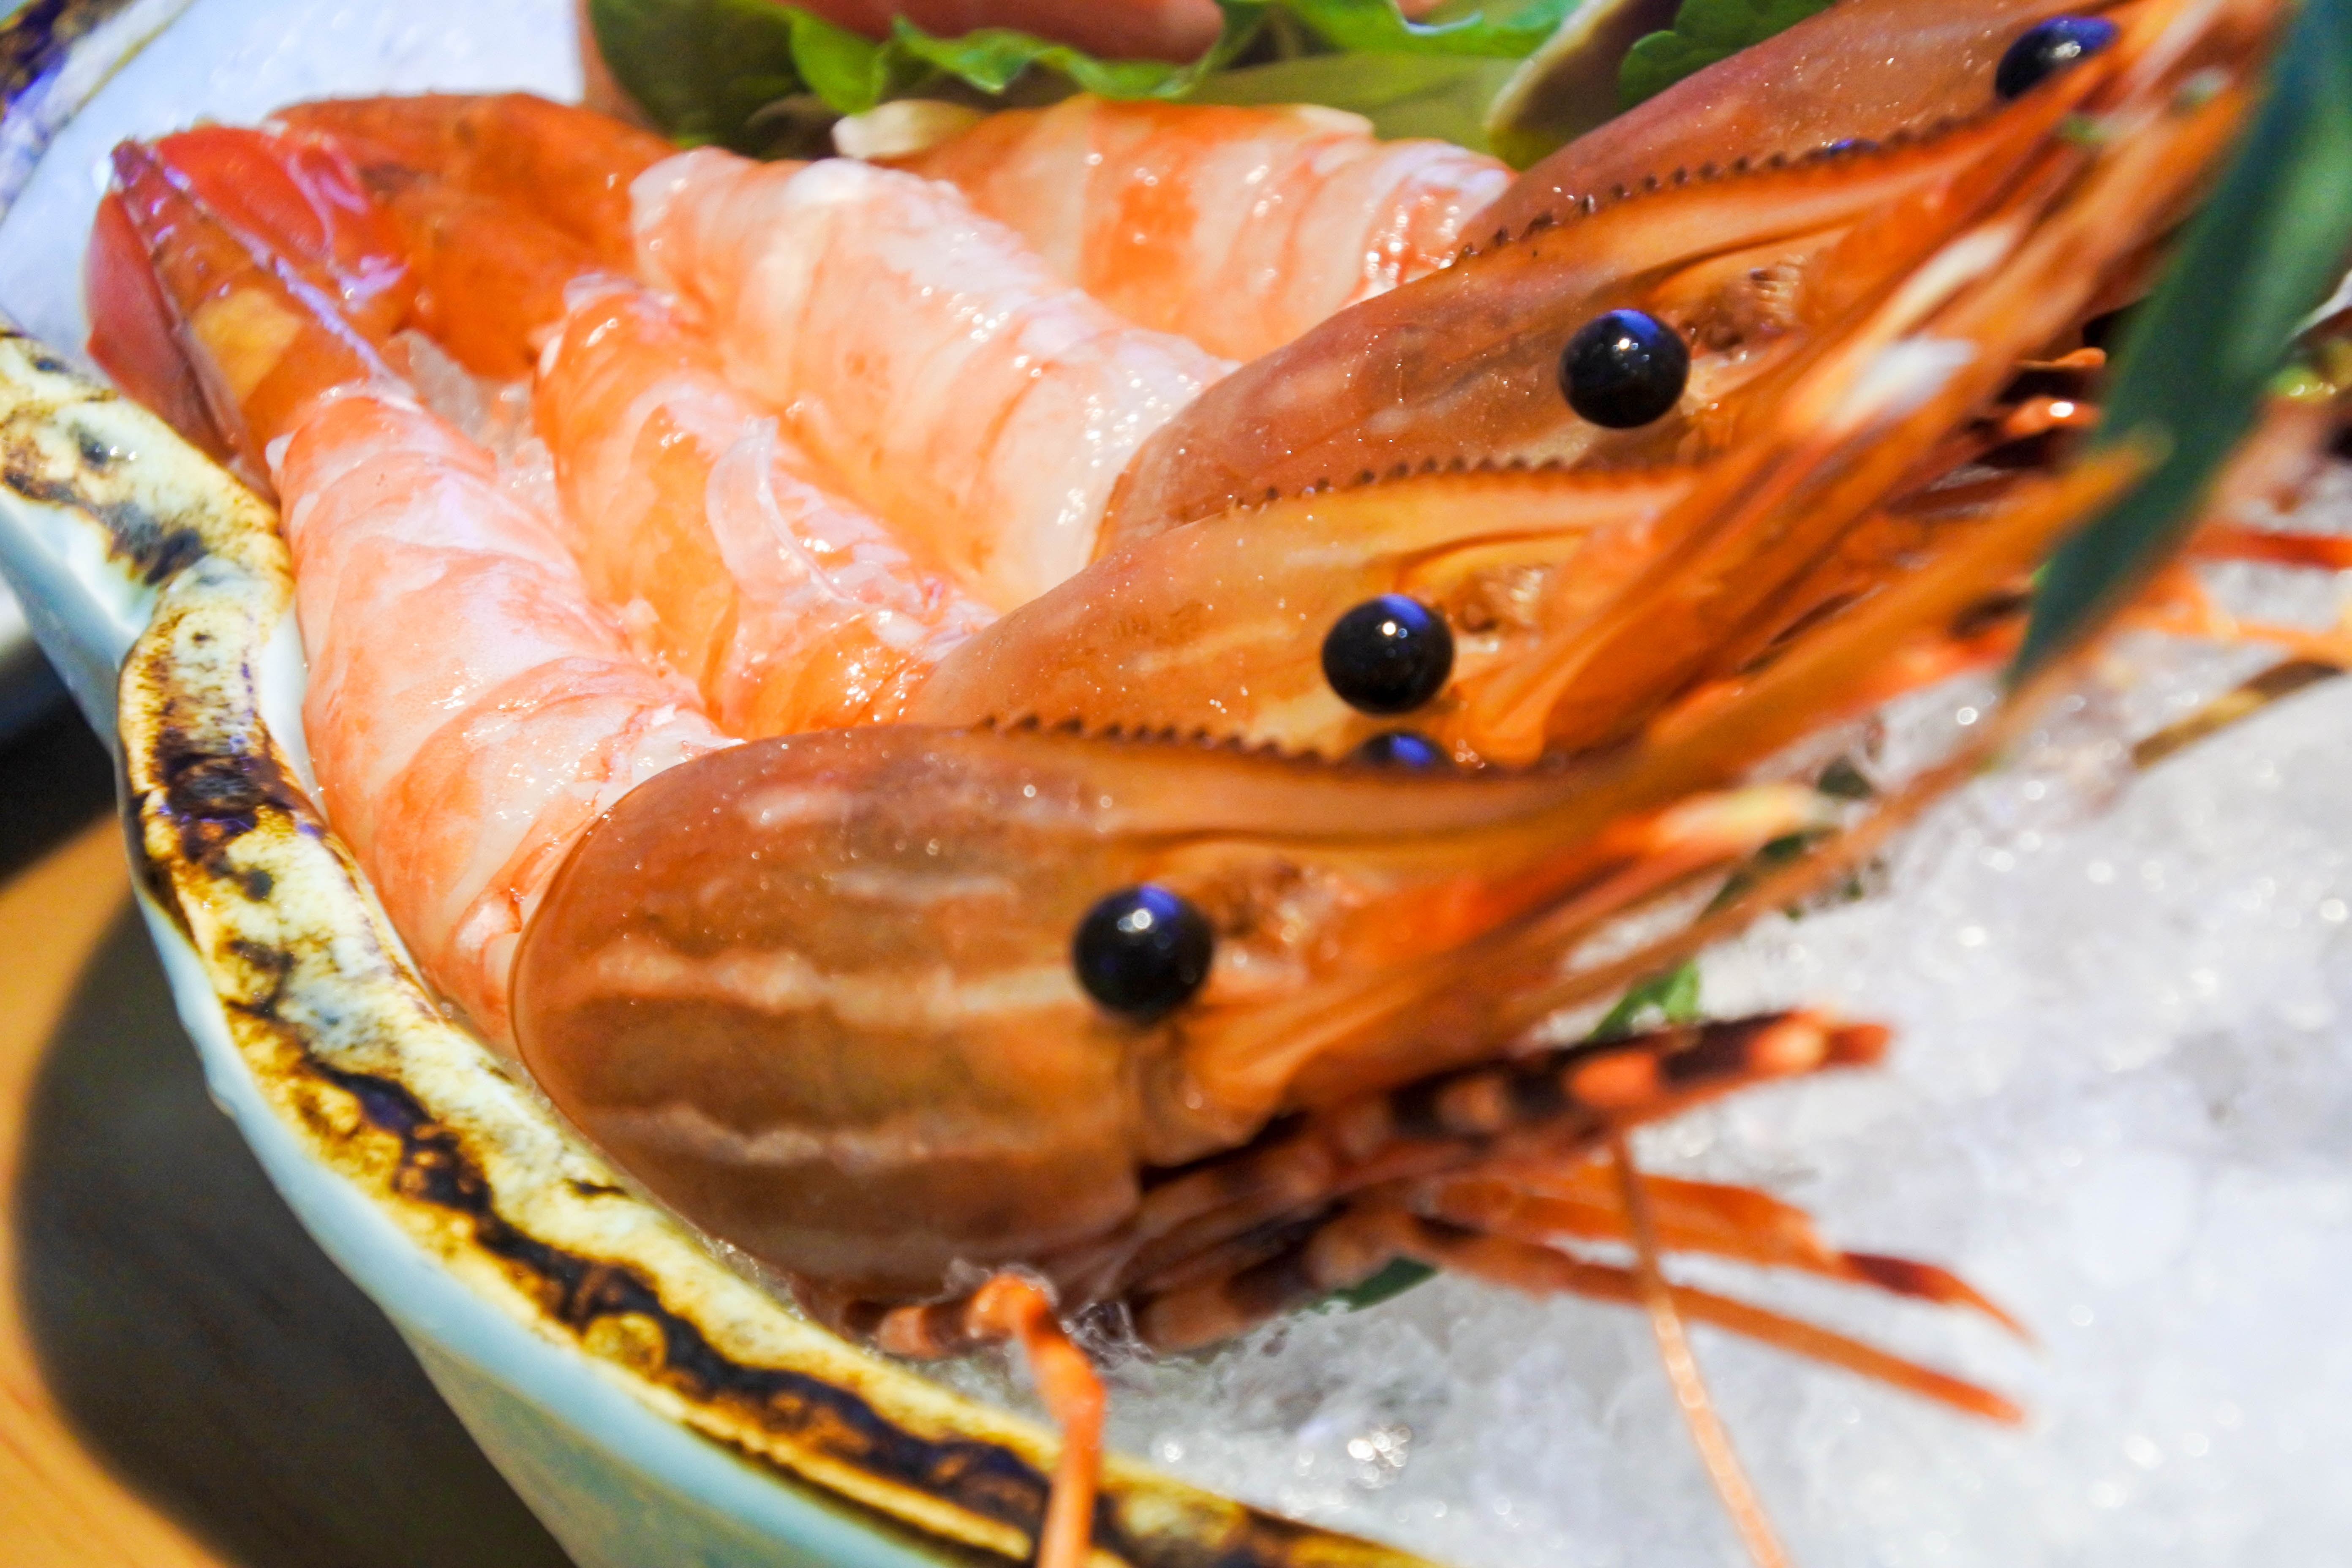 牡丹虾个头又大又好吃刺身新鲜量足,三文鱼的厚切让人一看就很满足